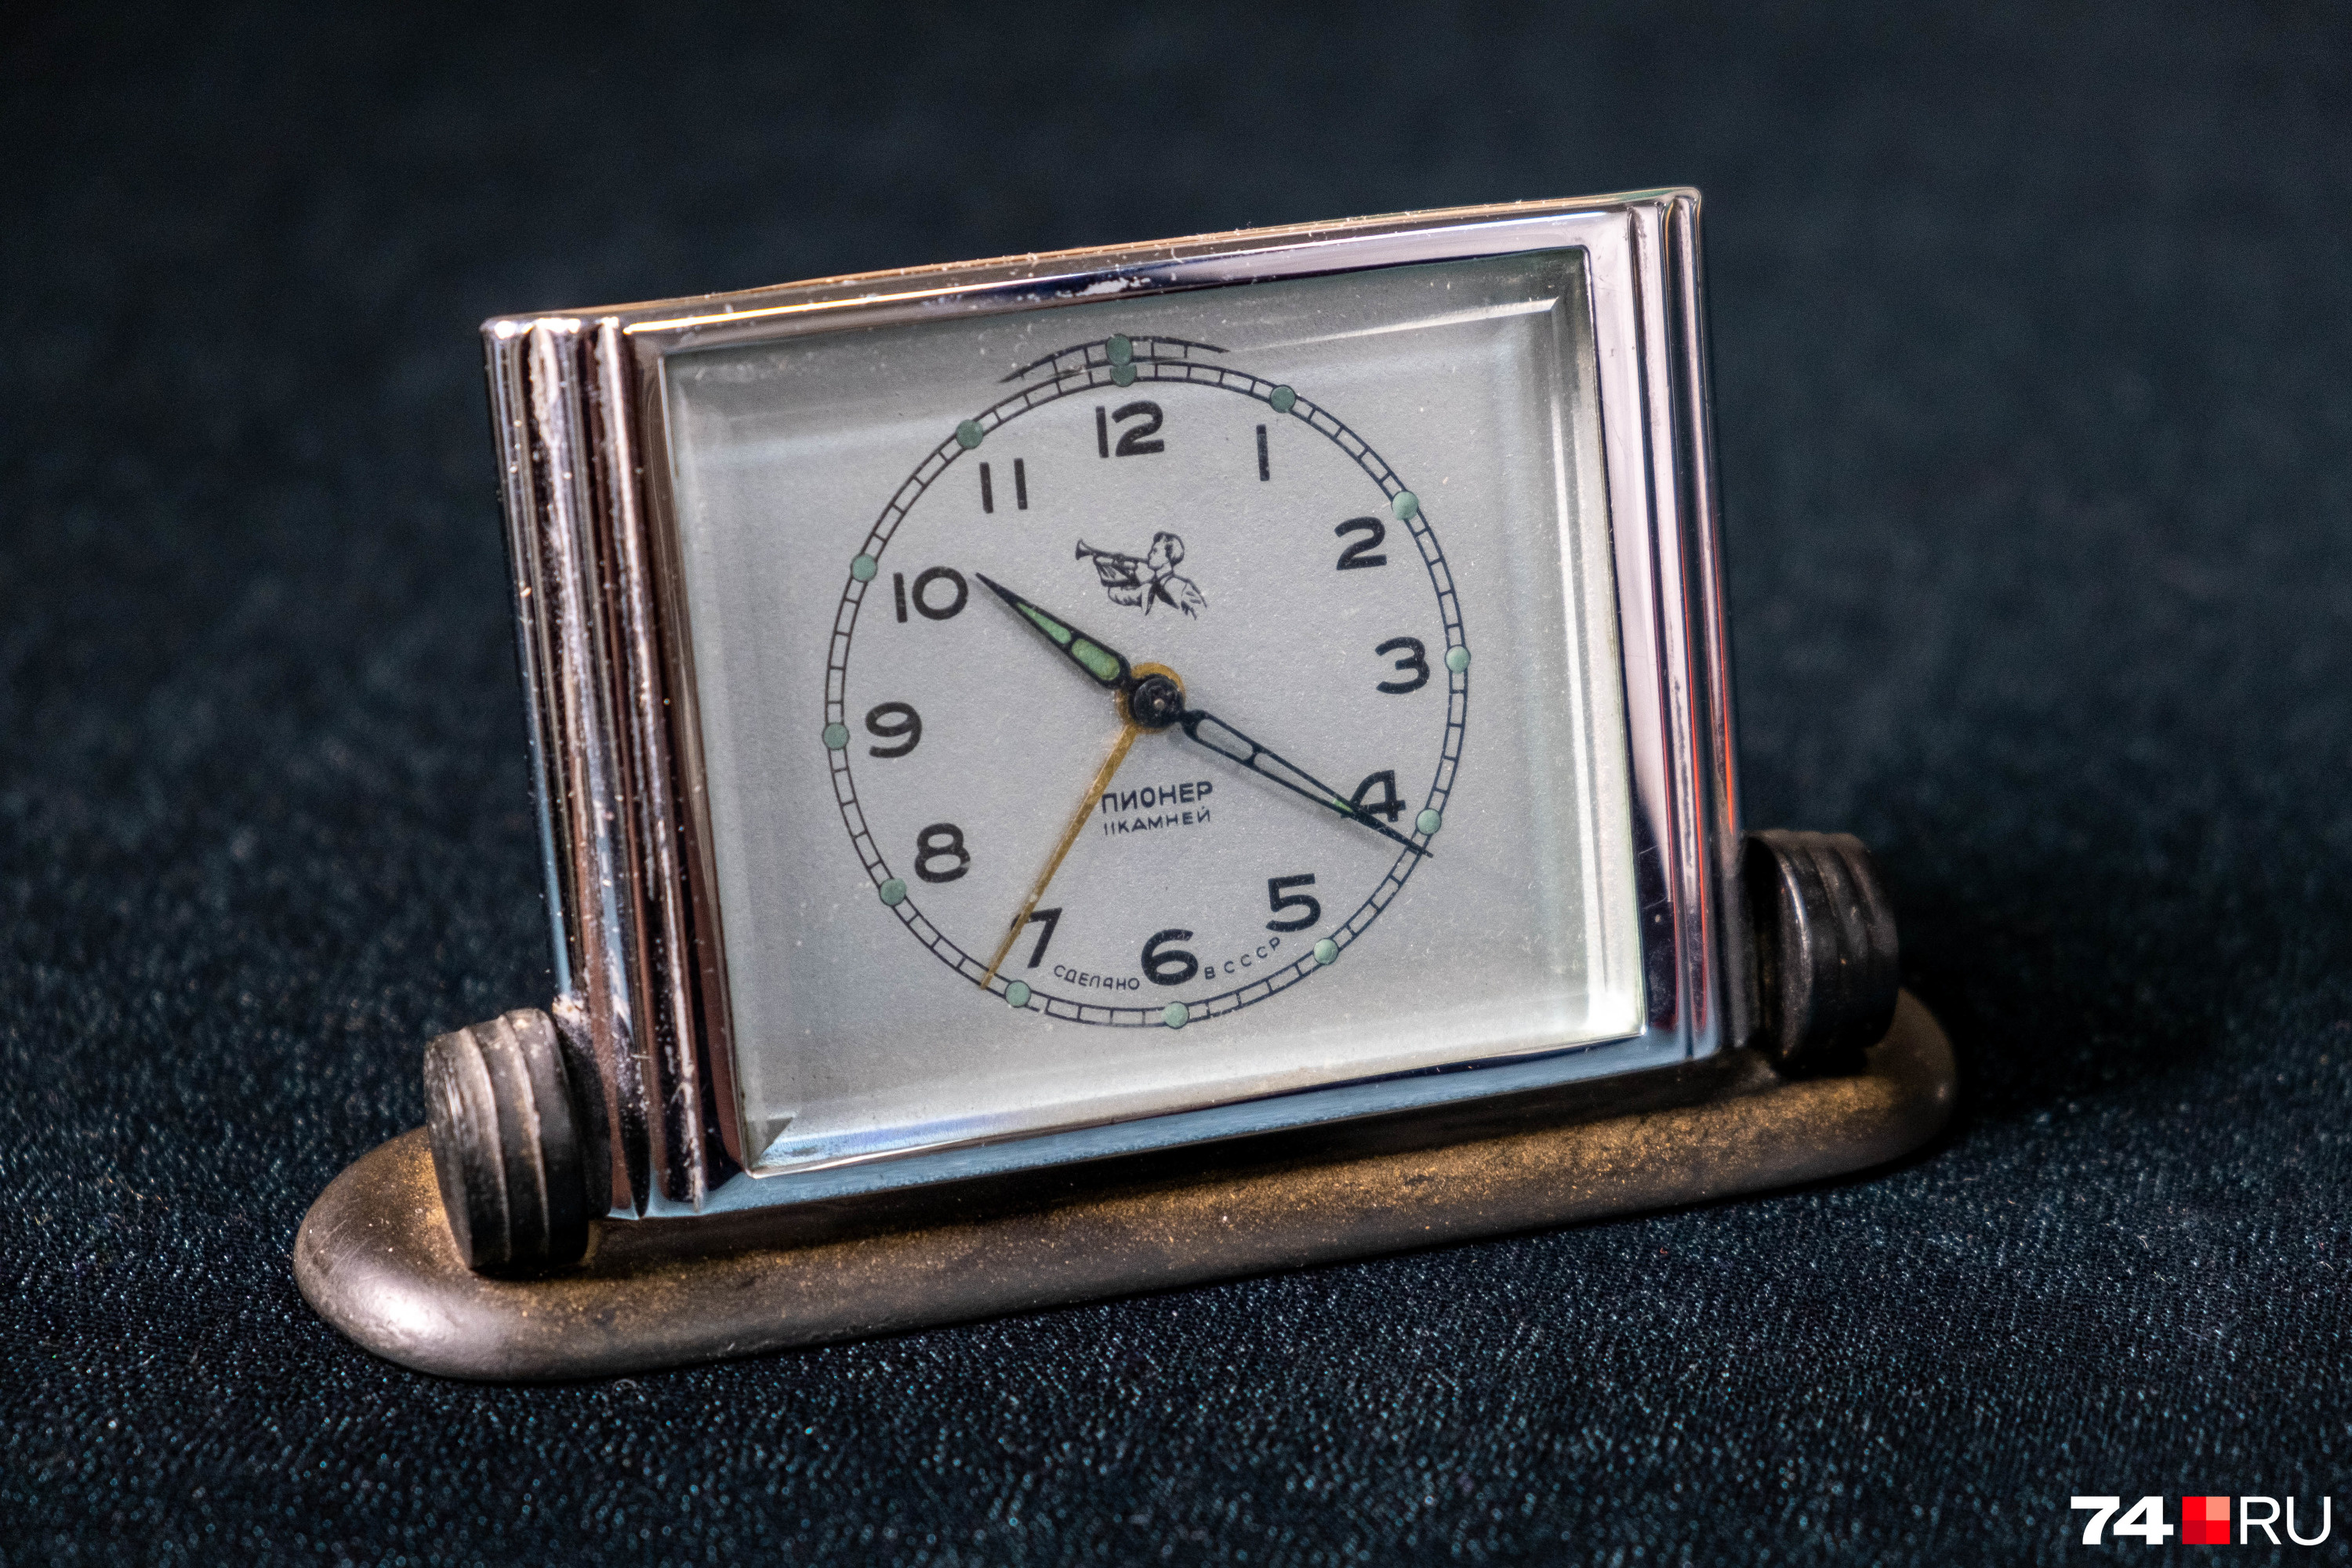 И еще одно напоминание о традициях того времени — часы-будильник «Пионер». Были выпущены в 1957 году к 35-летию пионерской организации<br>